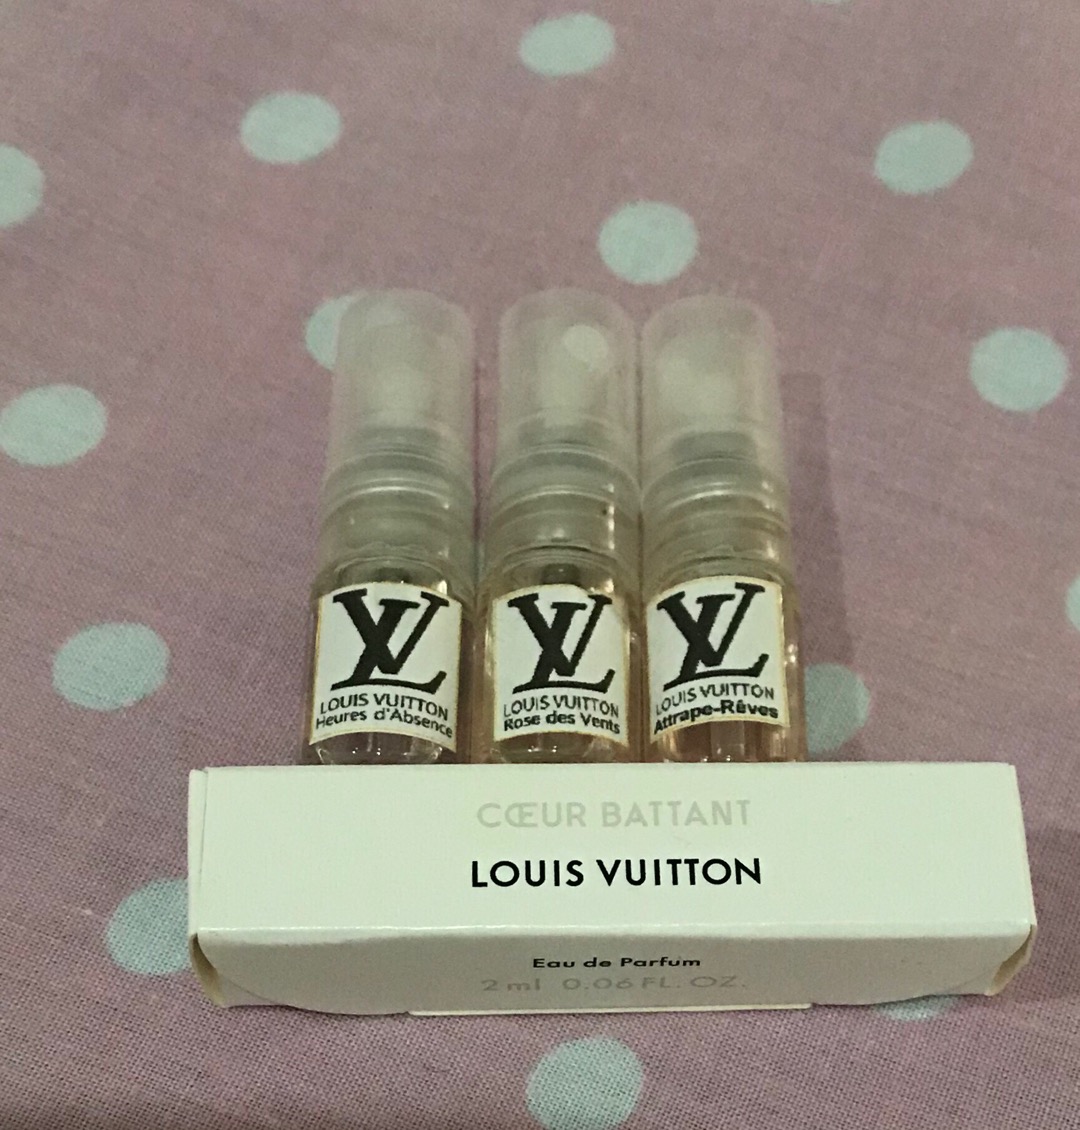 Louis Vuitton Decant (Les sables, rose des vent, le jour, contre moi, attrape, etc) | Shopee ...